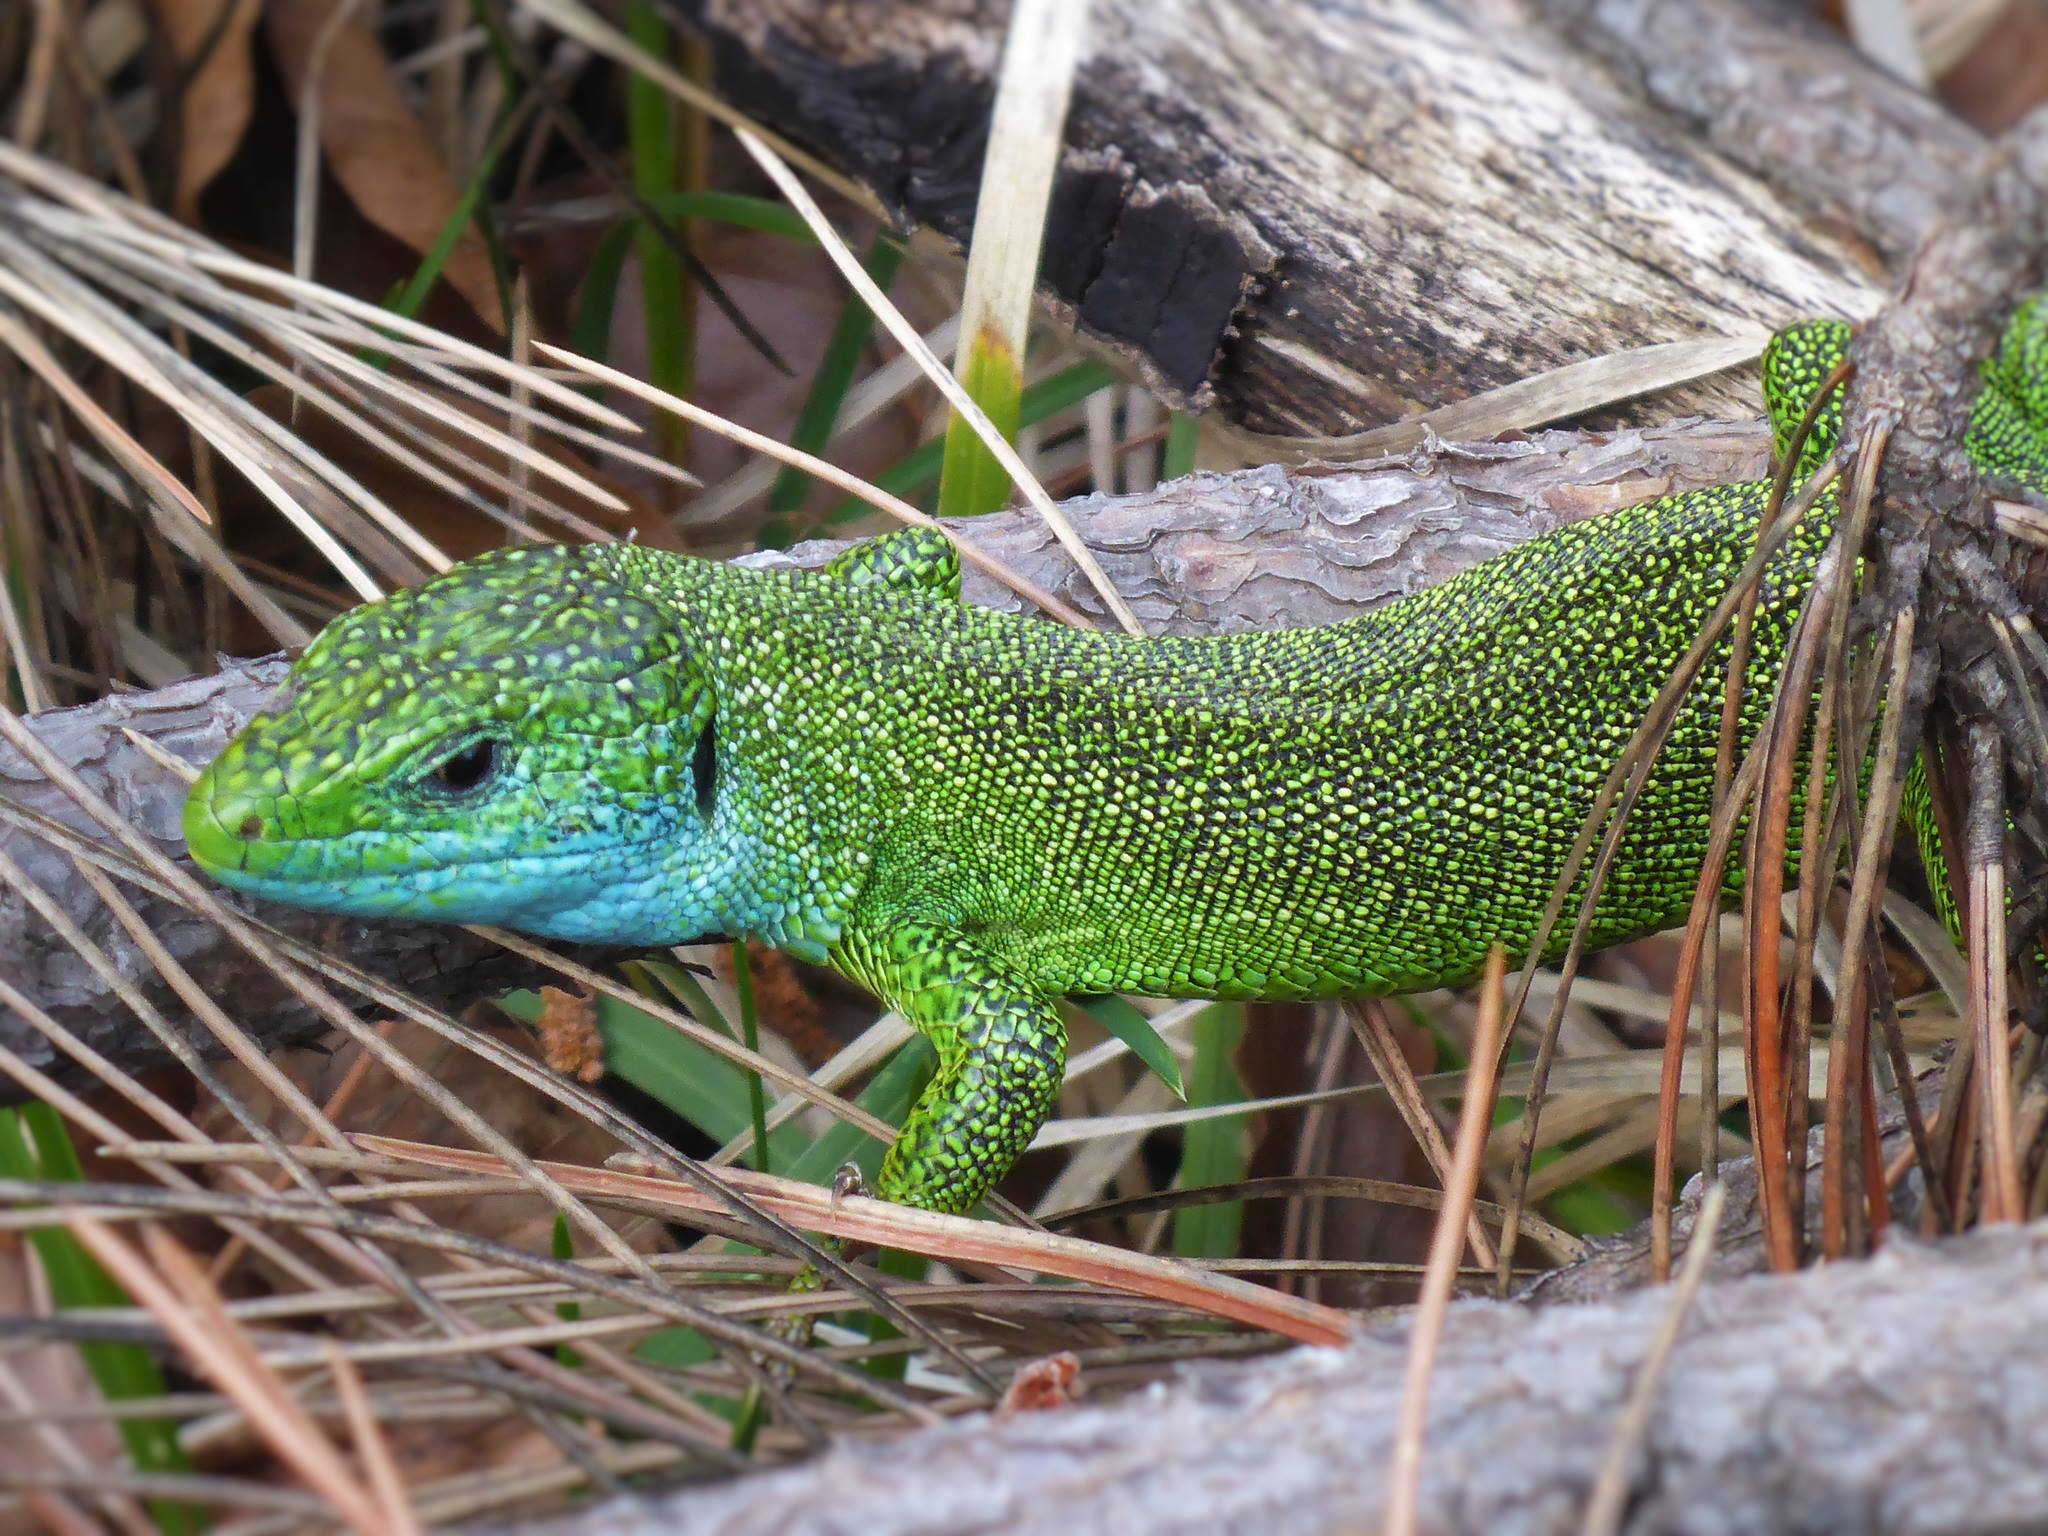 Le mâle se différencie par sa couleur verte et sa tache bleue sur le cou. Les femelles elles sont plus petites et de couleur grise.